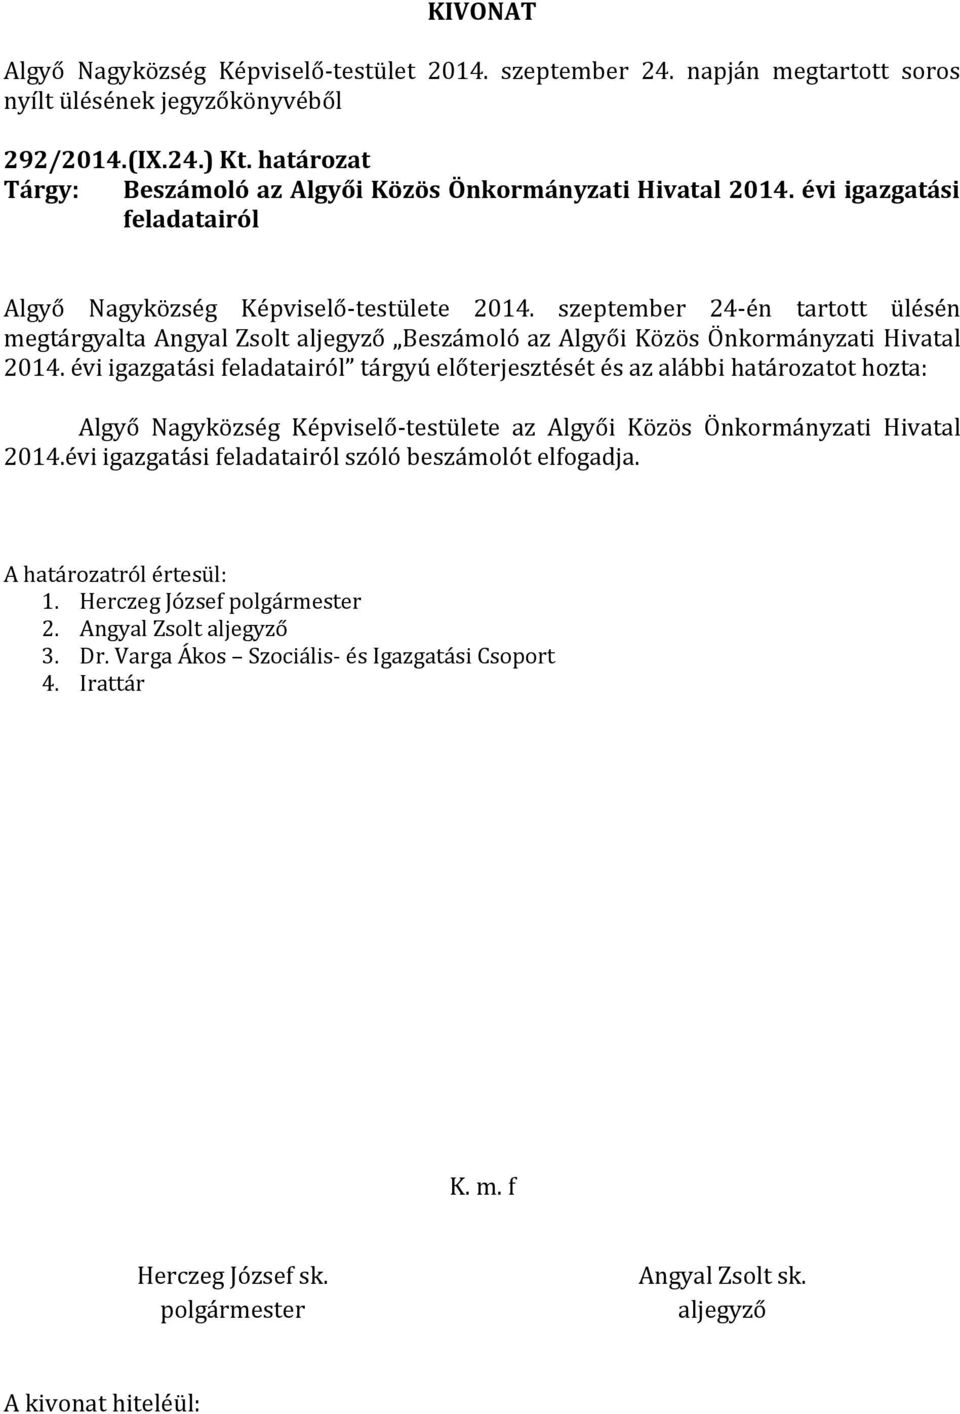 szeptember 24-én tartott ülésén megtárgyalta Angyal Zsolt Beszámoló az Algyői Közös Önkormányzati Hivatal 2014.